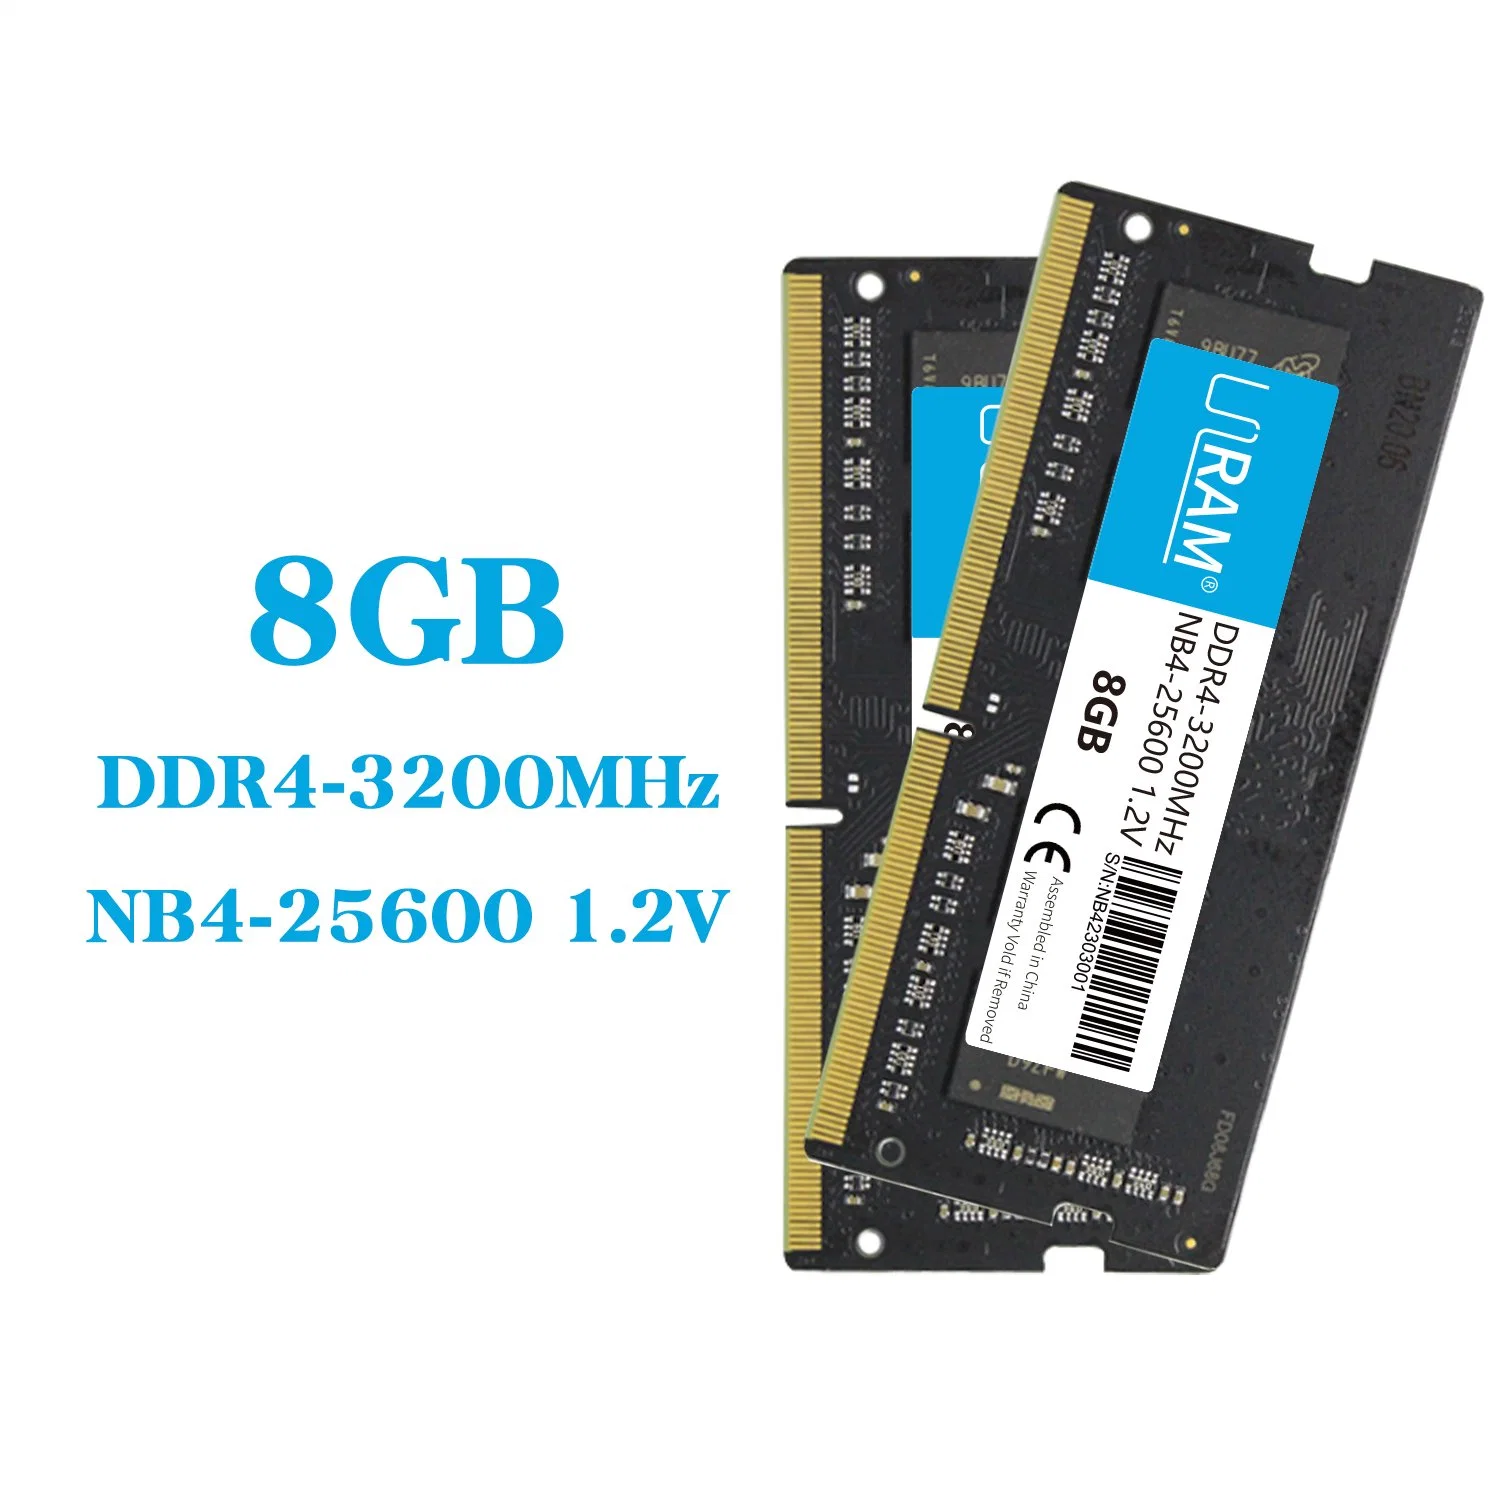 ذاكرة DDR RAM مخصصة للكمبيوتر DDR4 SO-DIMM سعة 8 جيجابايت/16 جيجابايت/32 جيجابايت بسرعة 7200 ميجاهرتز